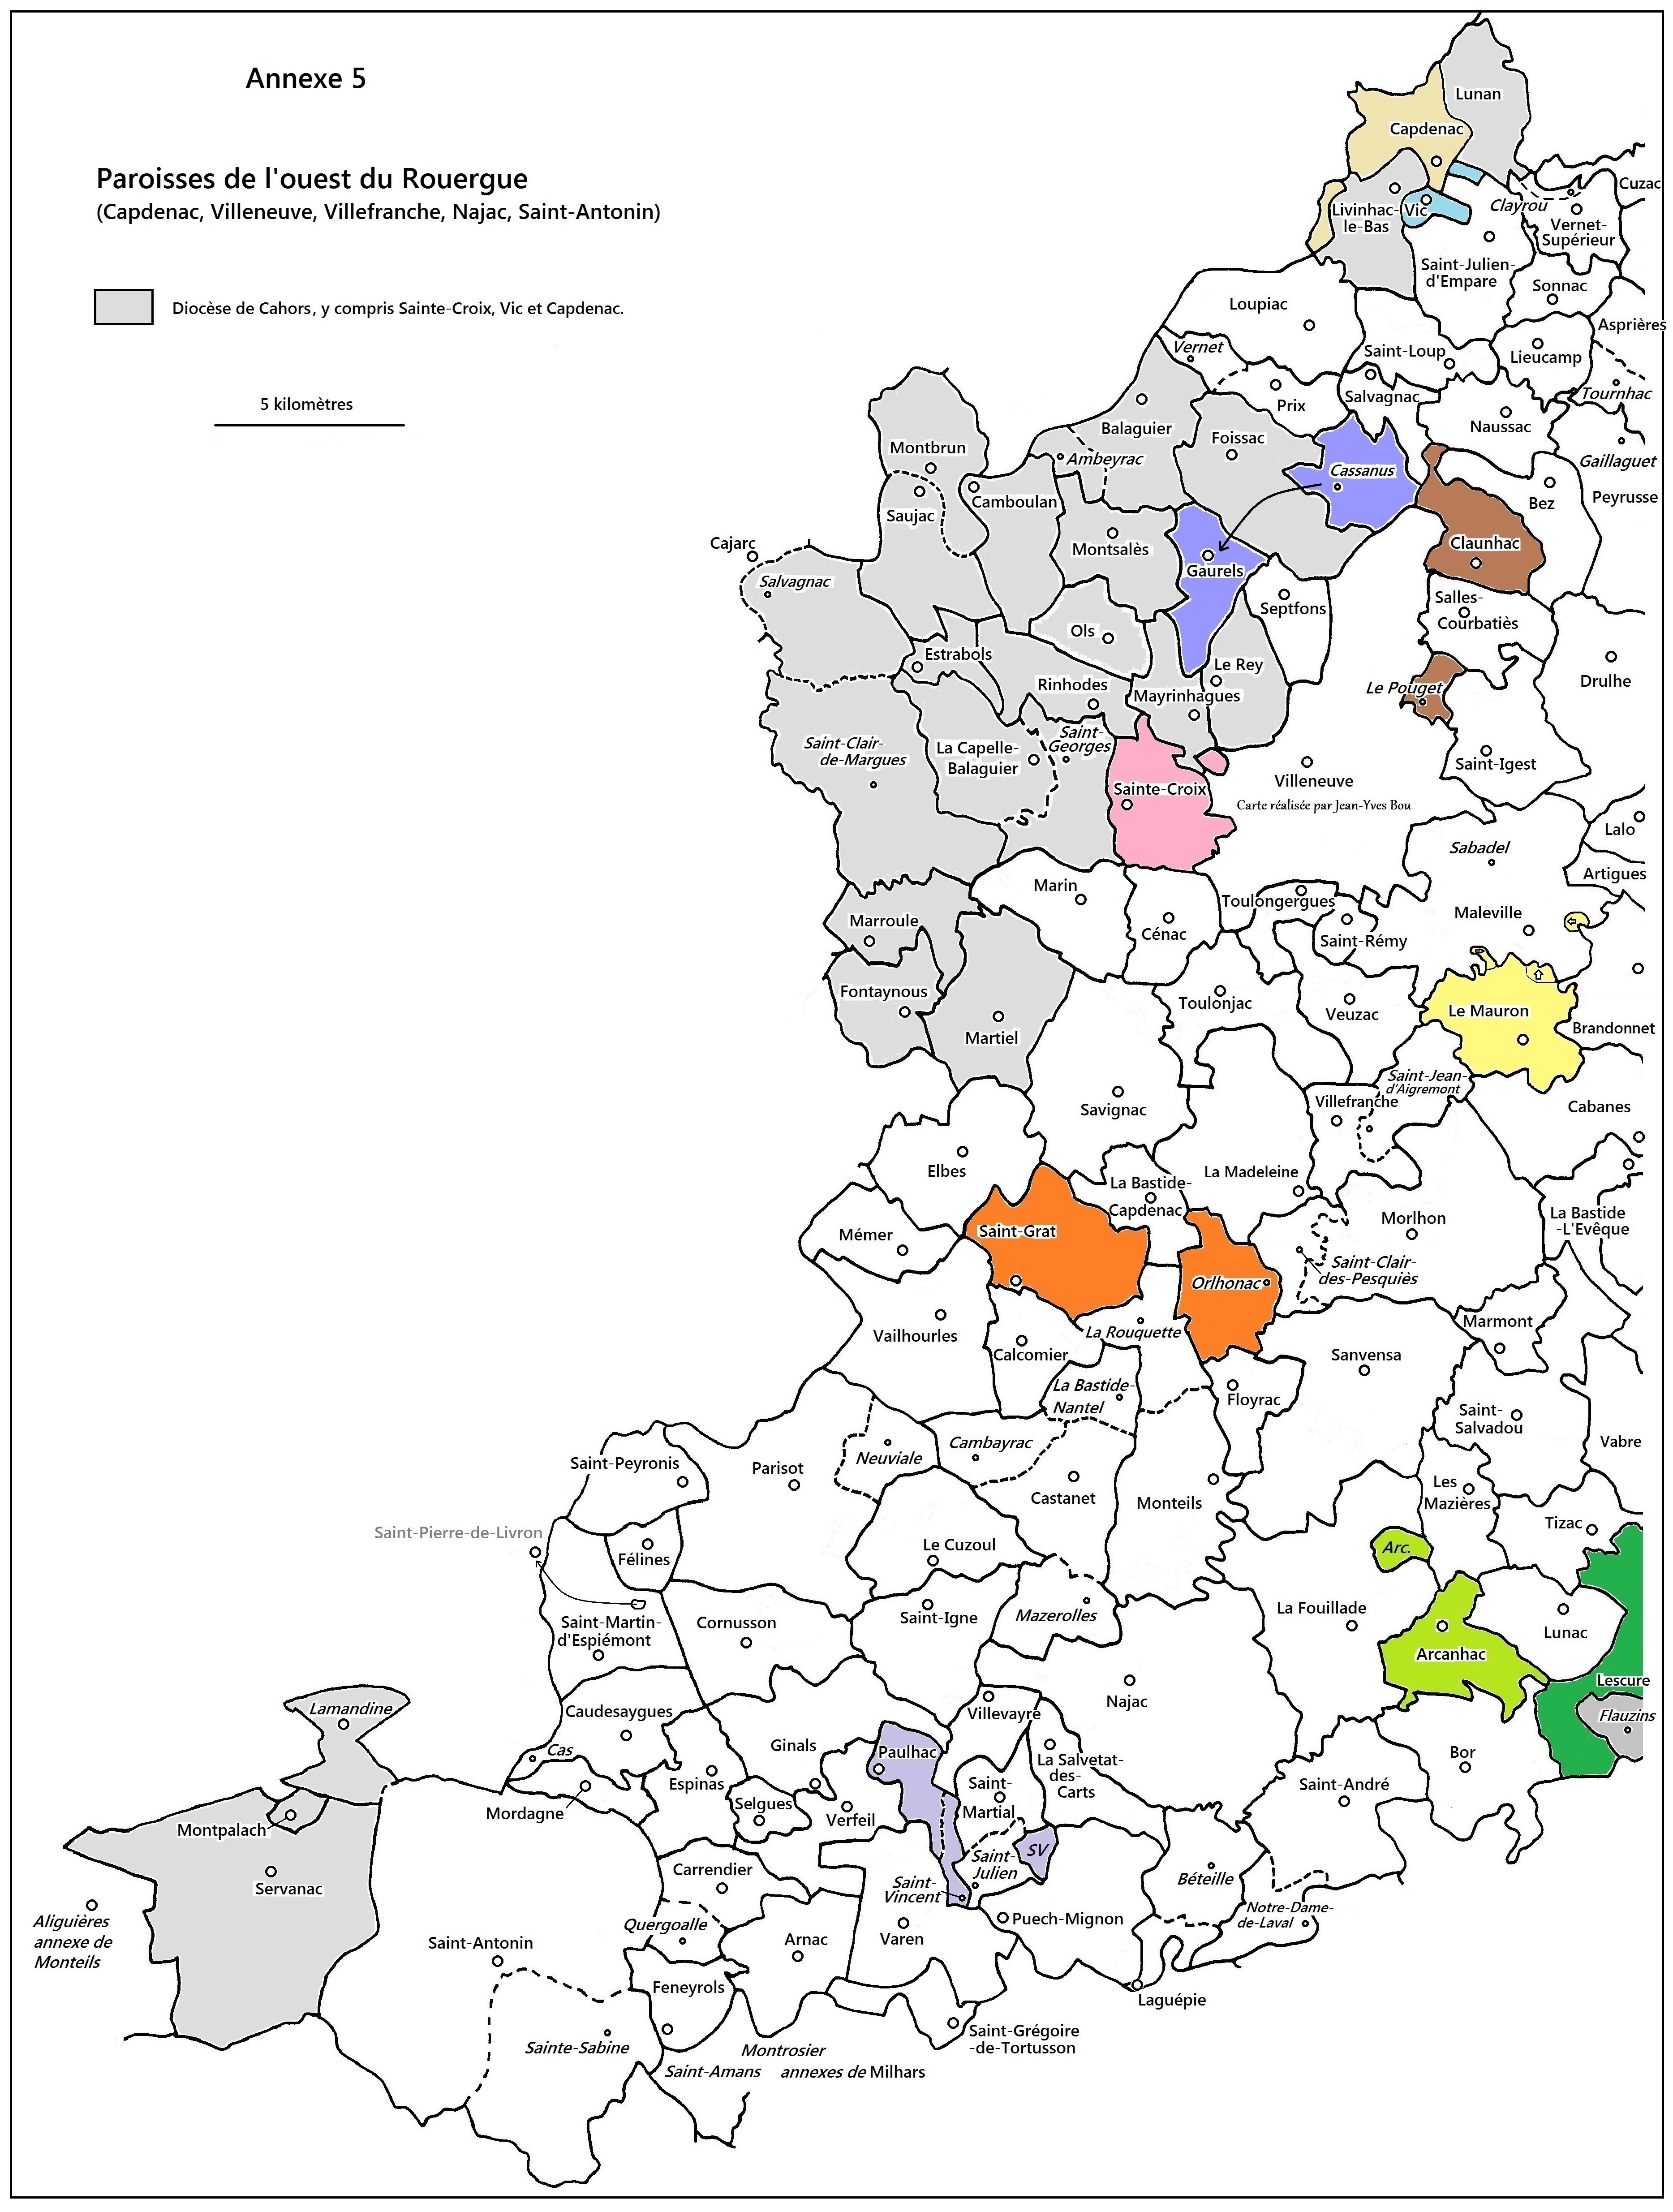 256 paroisses villefranchois - Couleur.jpg